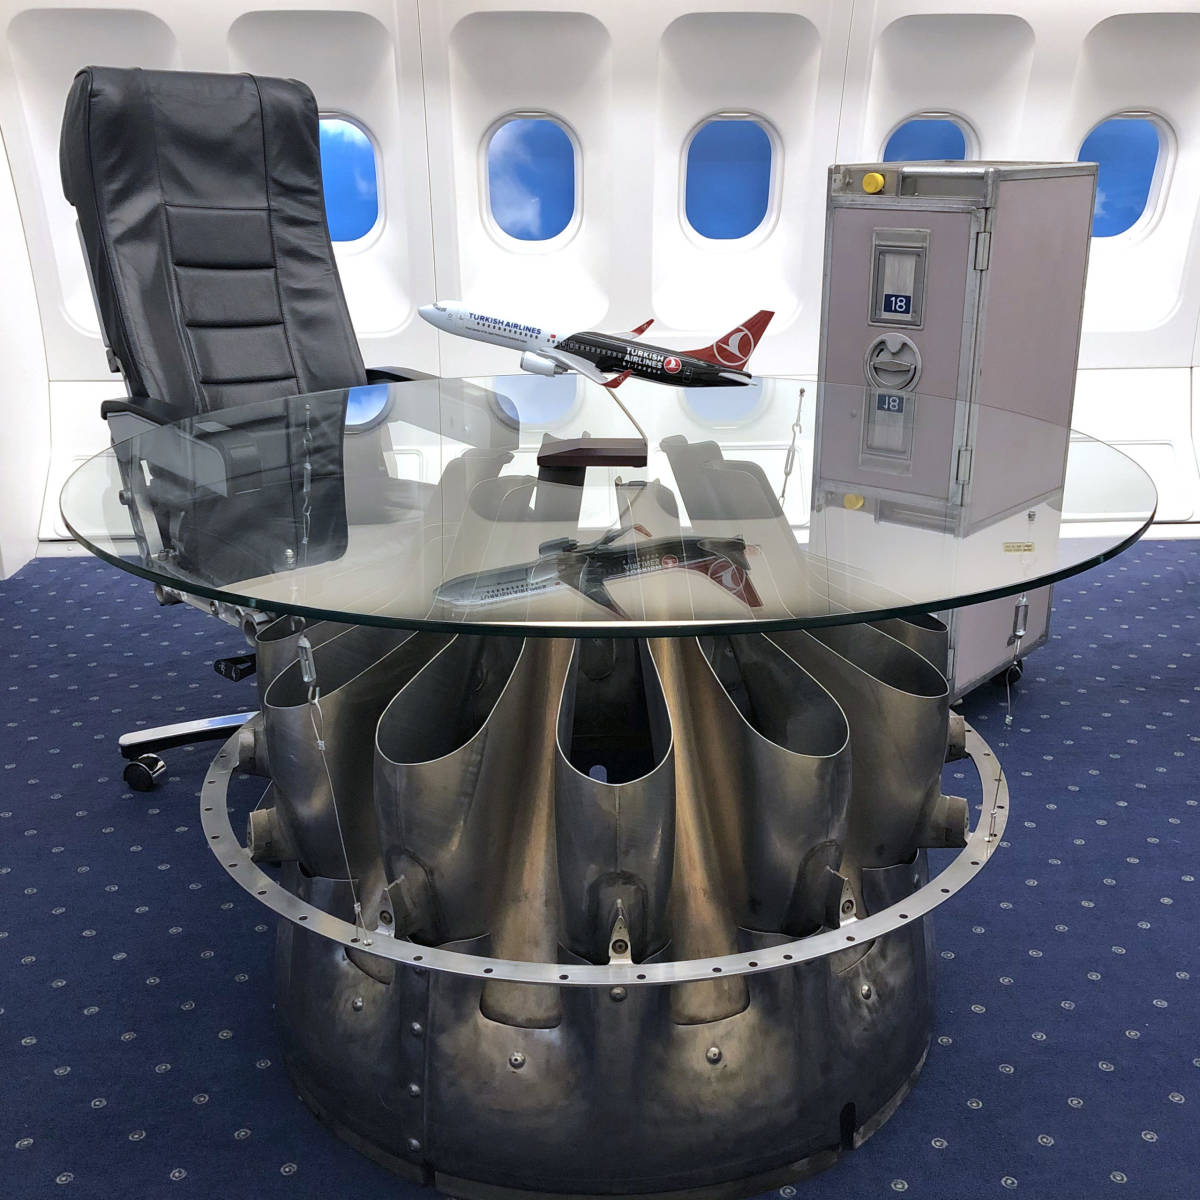 ガラステーブル Boeing B727 エンジン本物とエコノミークラス座席 キャスター付き B737 Boeing トルコ航空 ビジネス 椅子セット